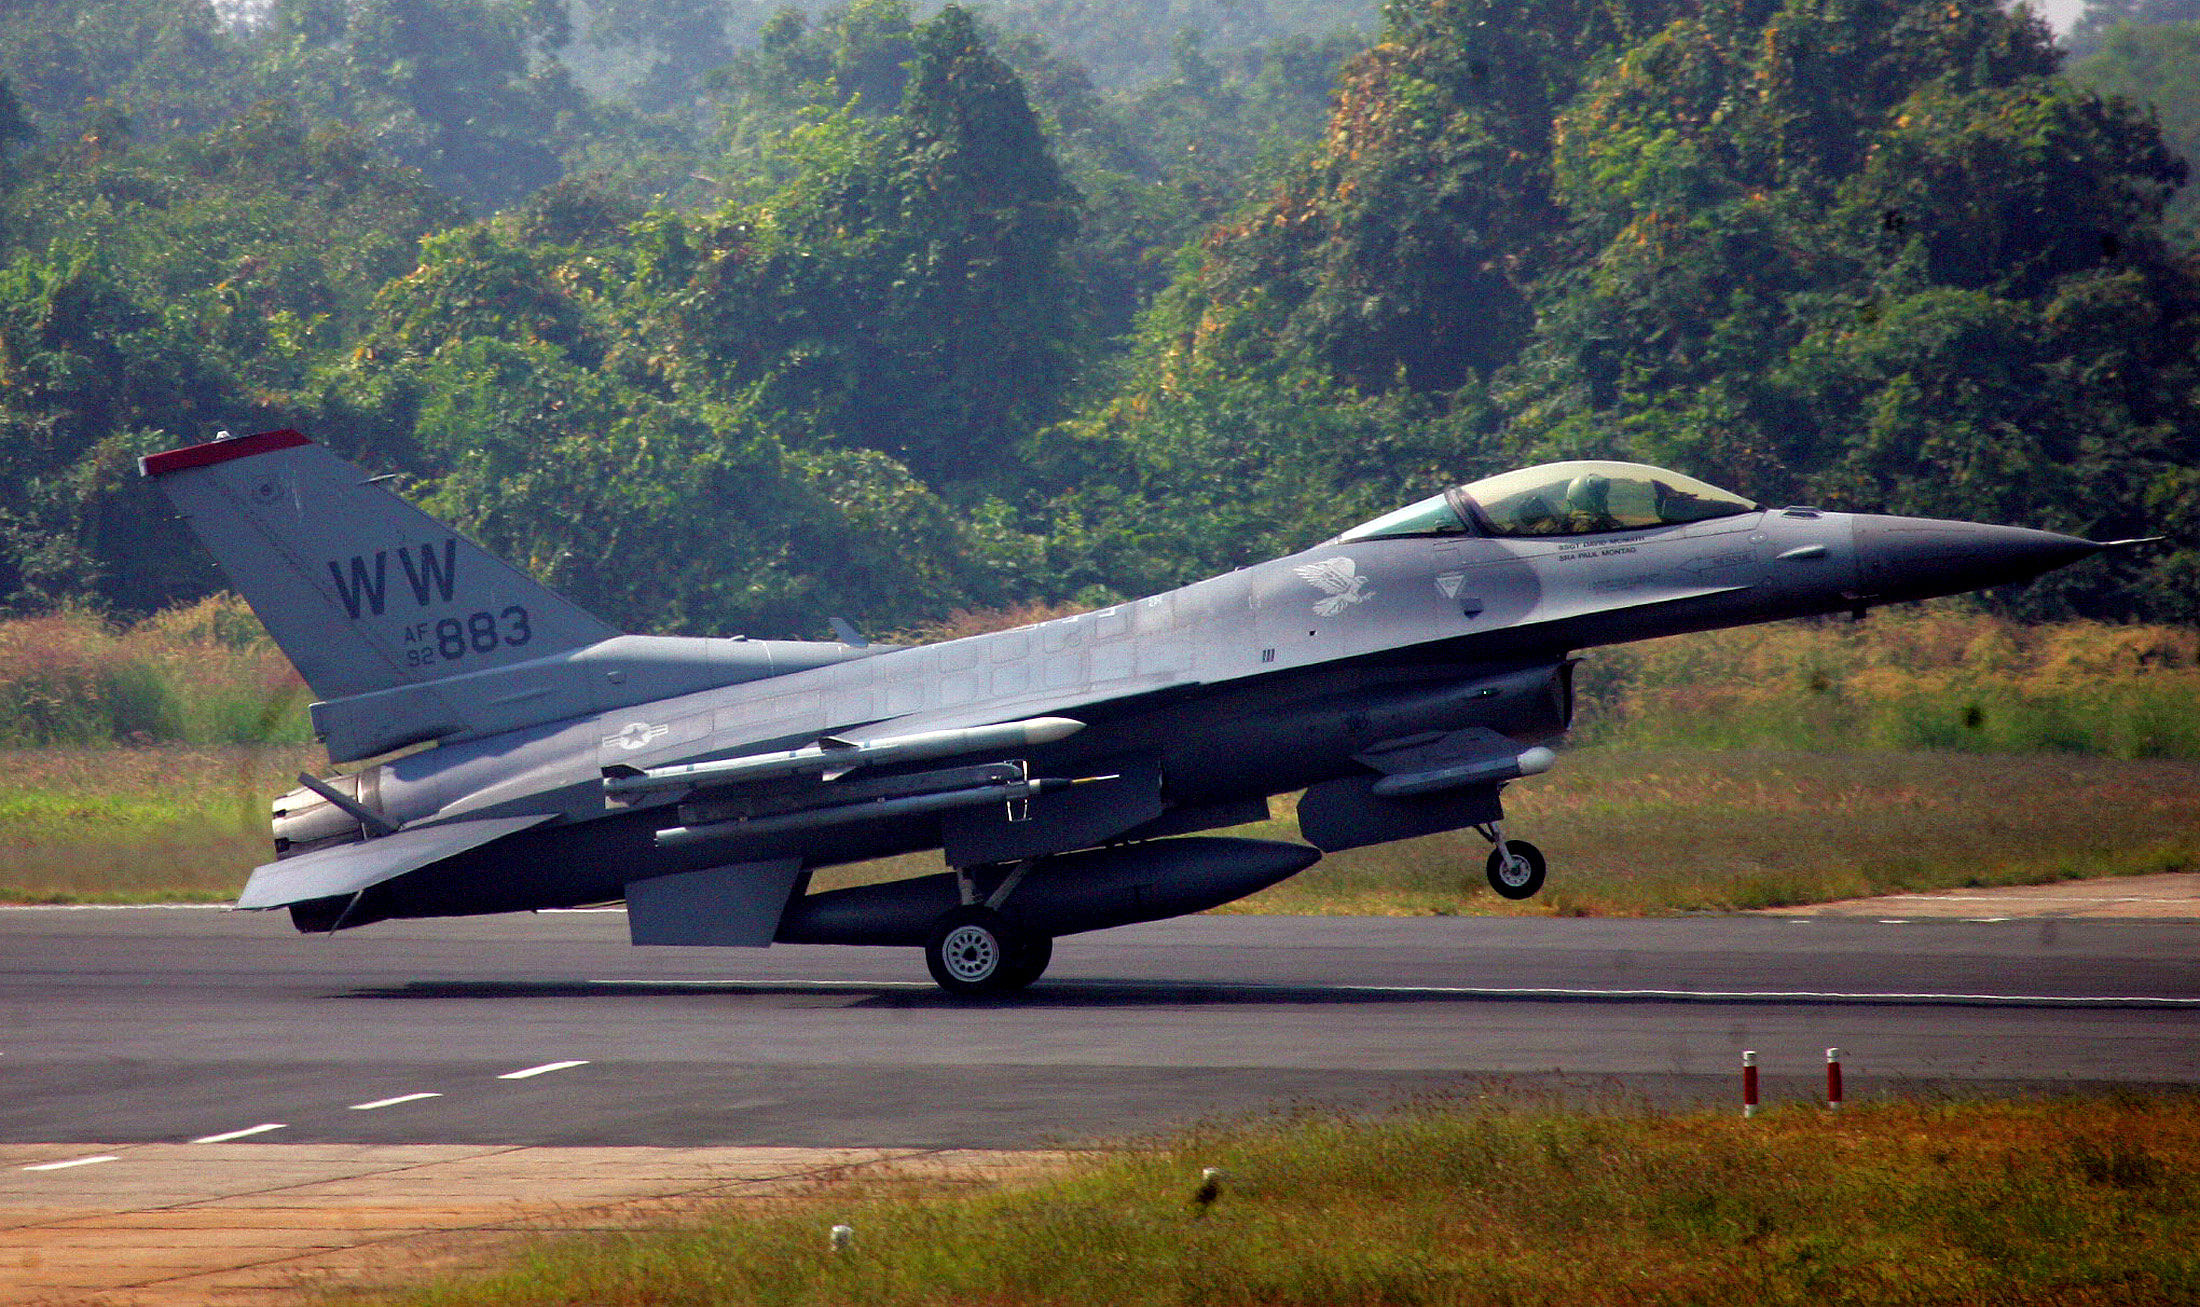 A US F-16 aircraft makes a landing during a joint India-U.S. air force exercises at the Kalaikunda Airbase, west of Kolkata, India, November 17, 2005. (Credit: Reuters Photo)